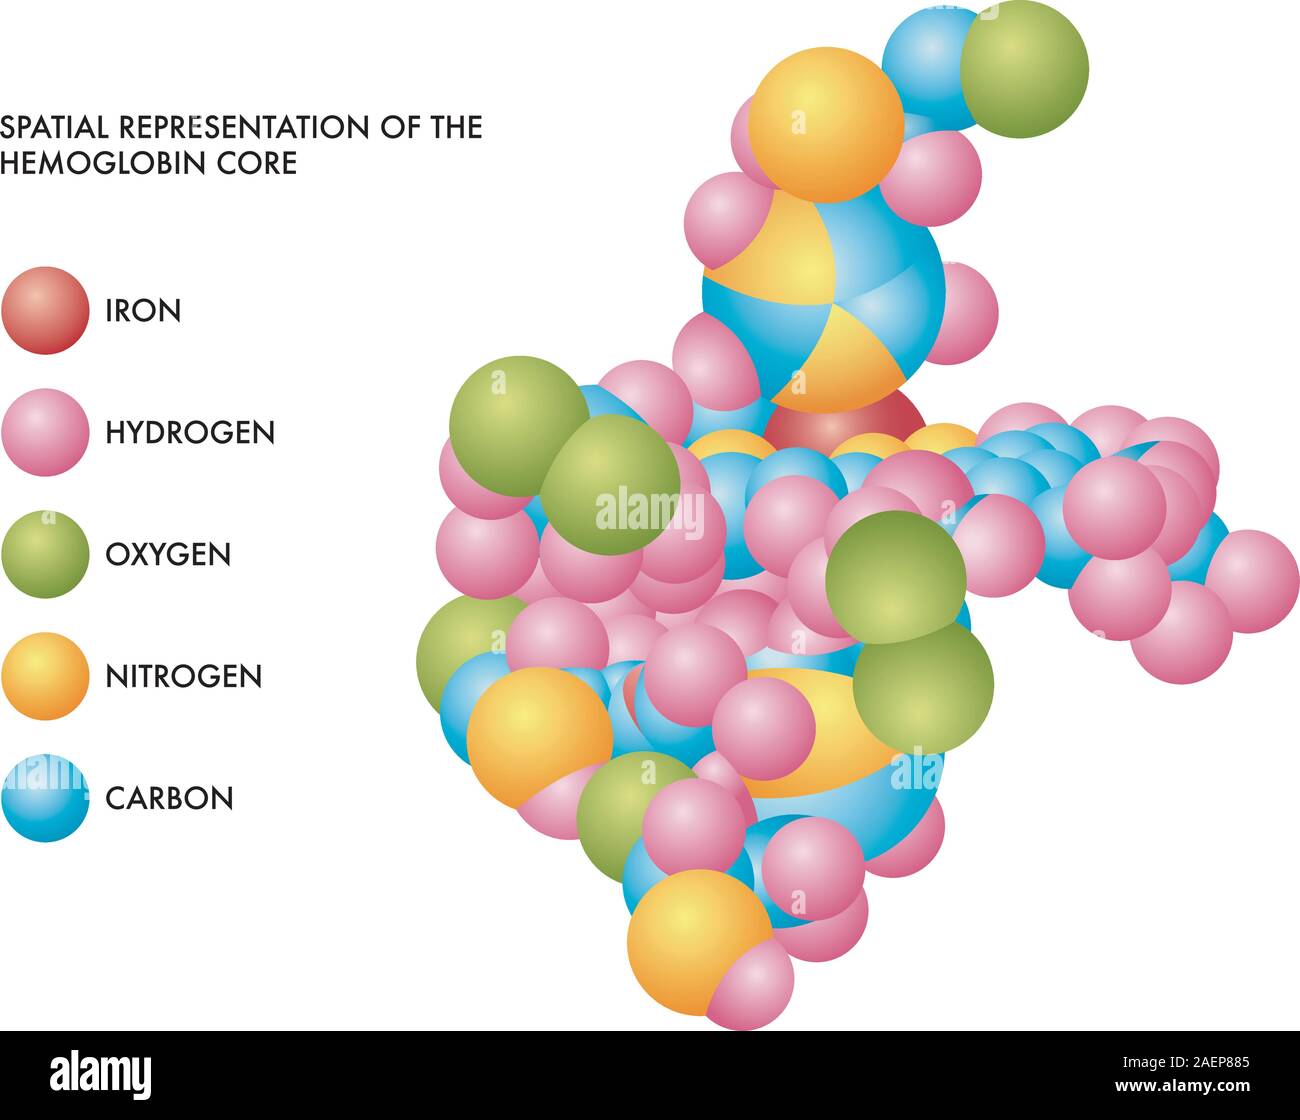 Medizinischen Abbildung des Hämoglobins Kern räumliche Darstellung mit Molekülen aus Eisen, Wasserstoff, Sauerstoff, Stickstoff und Kohlenstoff in farbige Formen. Stock Vektor